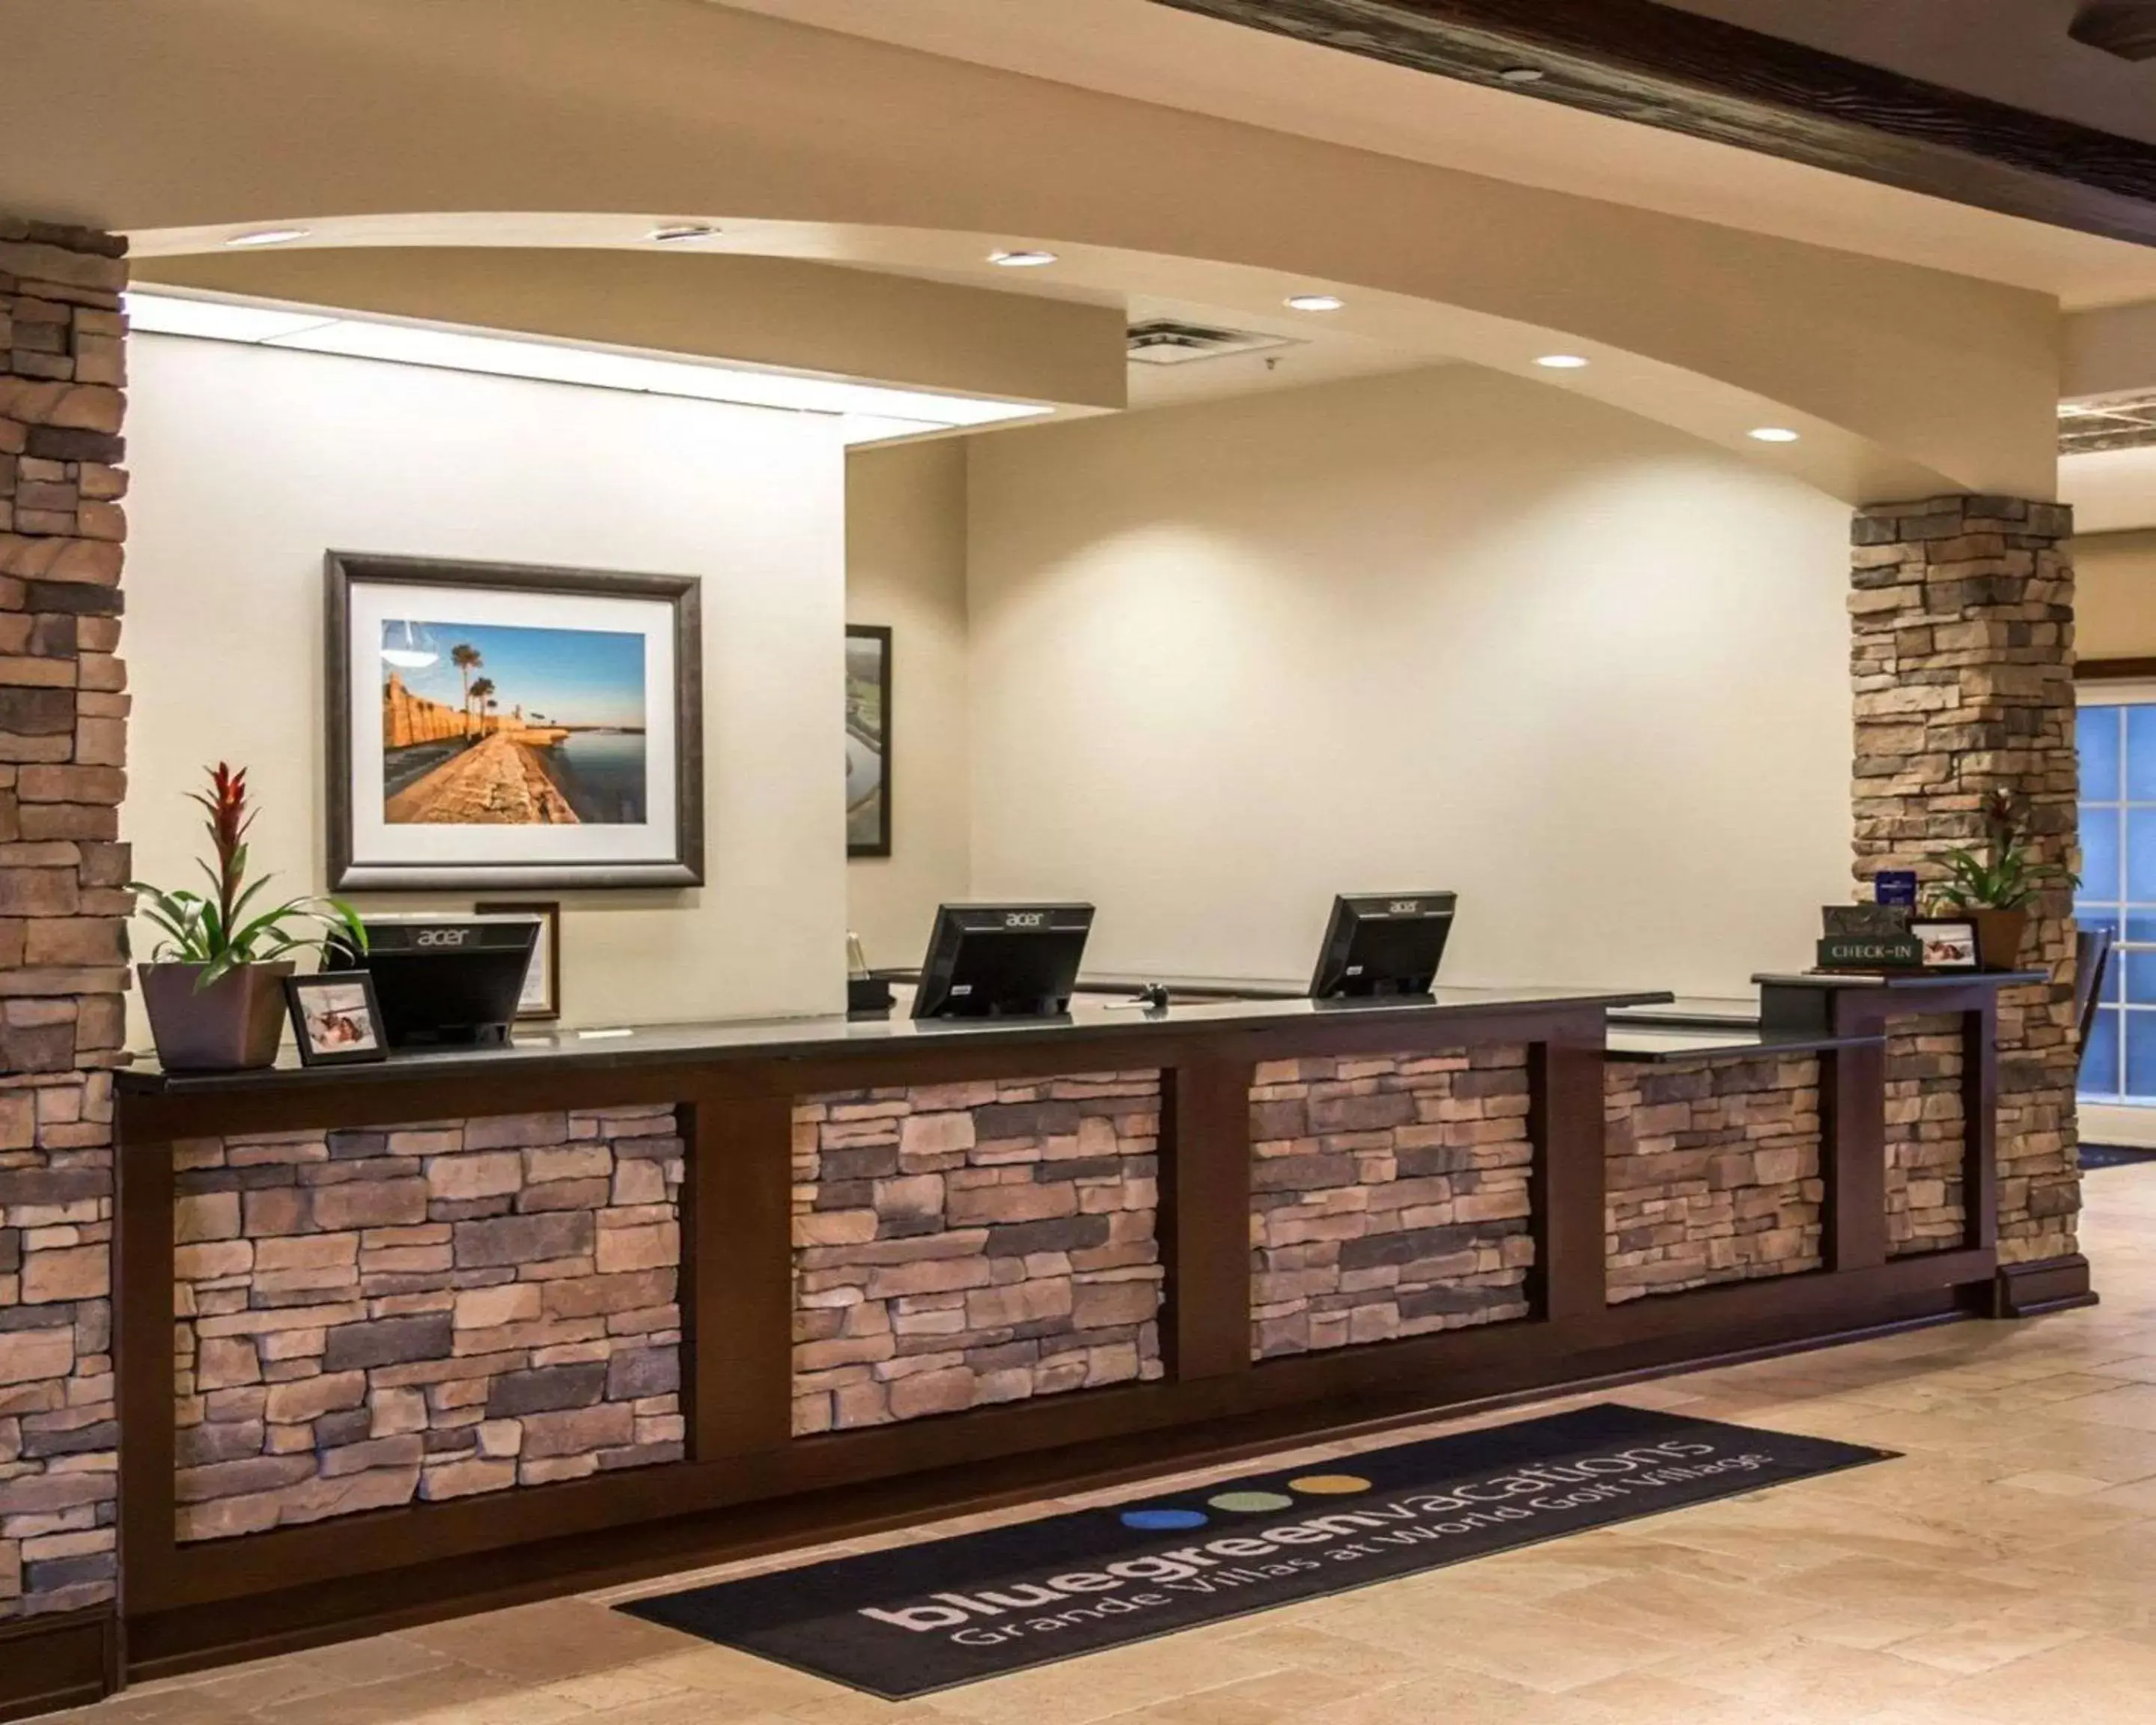 Lobby or reception, Lobby/Reception in Bluegreen Vacations Grande Villas at World Golf Village